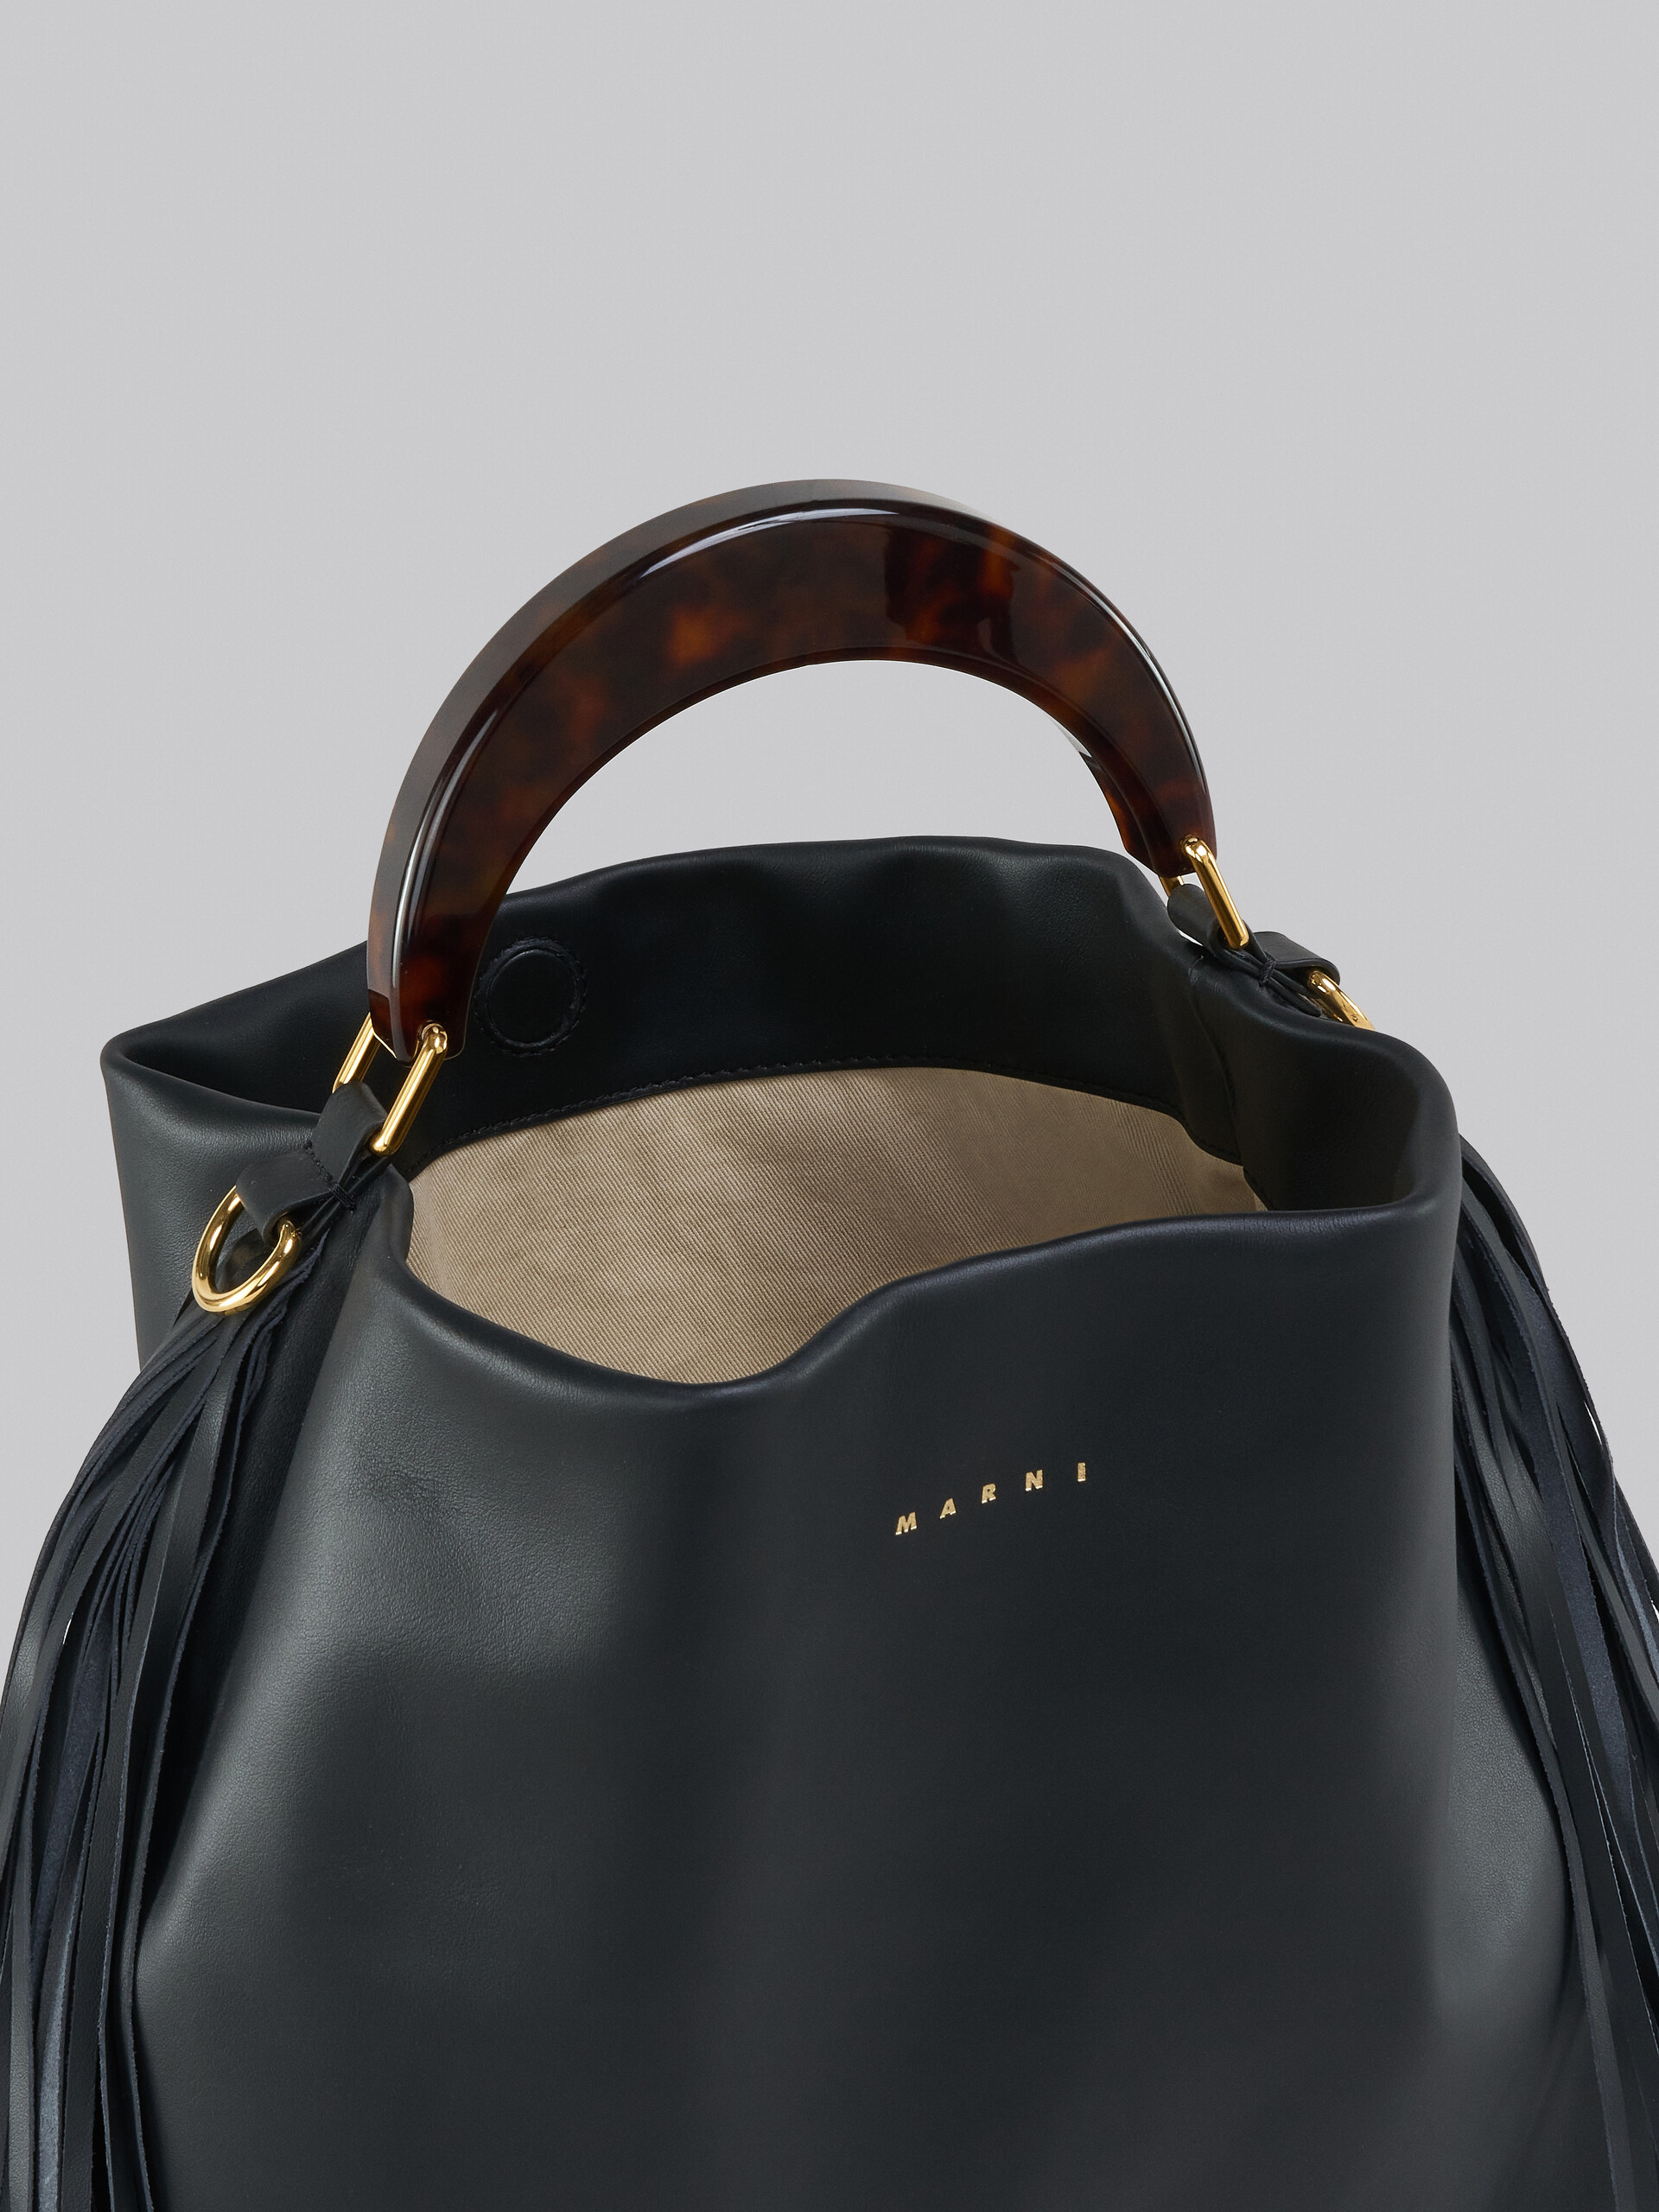 Venice Medium Bag in black leather with fringes - Shoulder Bag - Image 3